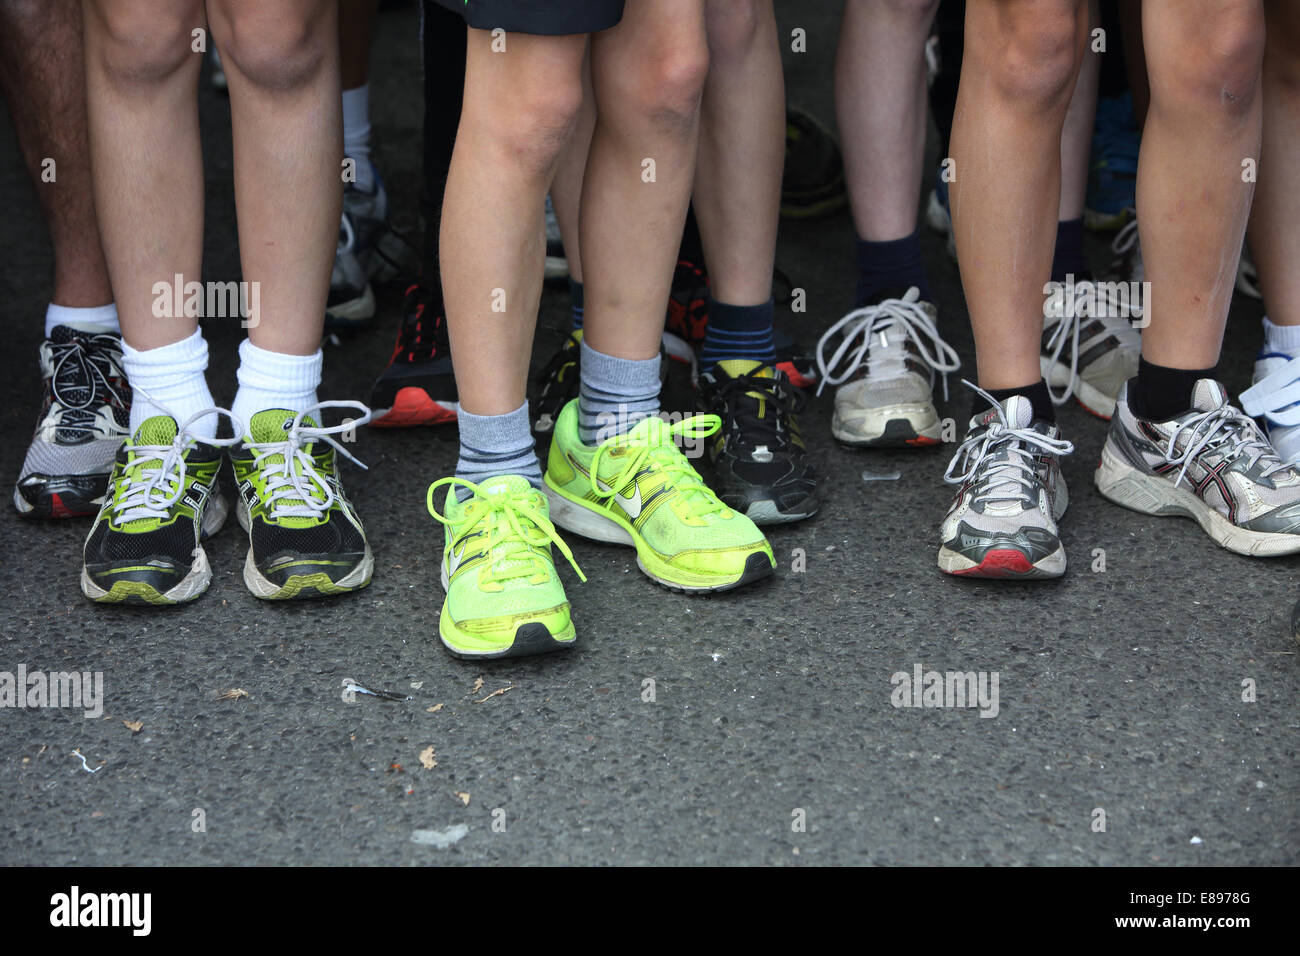 Berlin, Allemagne, les jambes de personnes dans des chaussures de course Banque D'Images